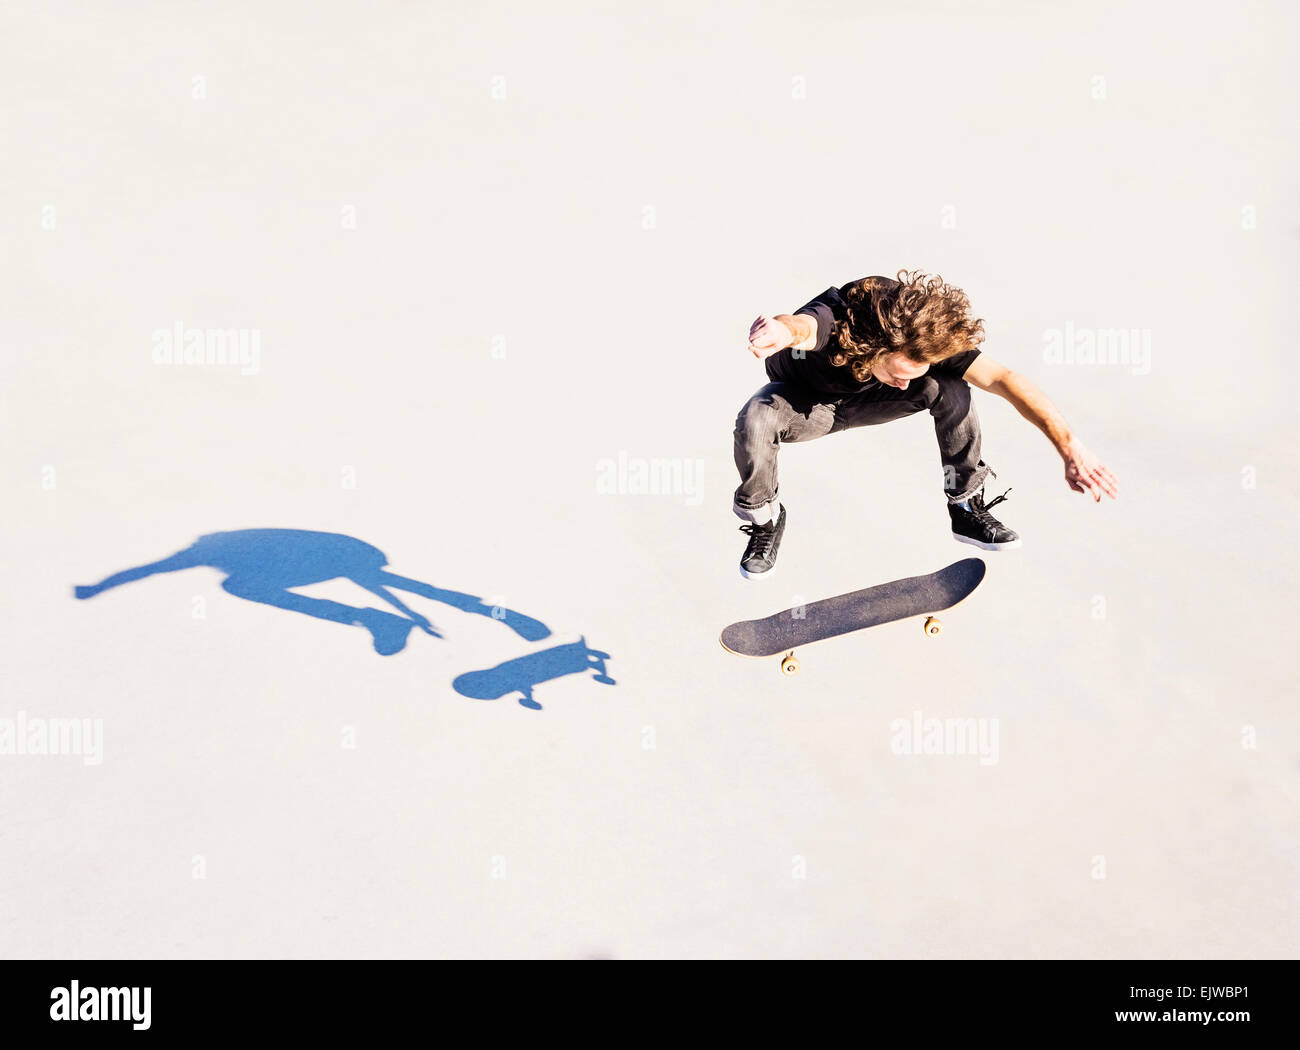 USA, Floride, West Palm Beach, l'homme sautant sur roulettes dans skatepark Banque D'Images